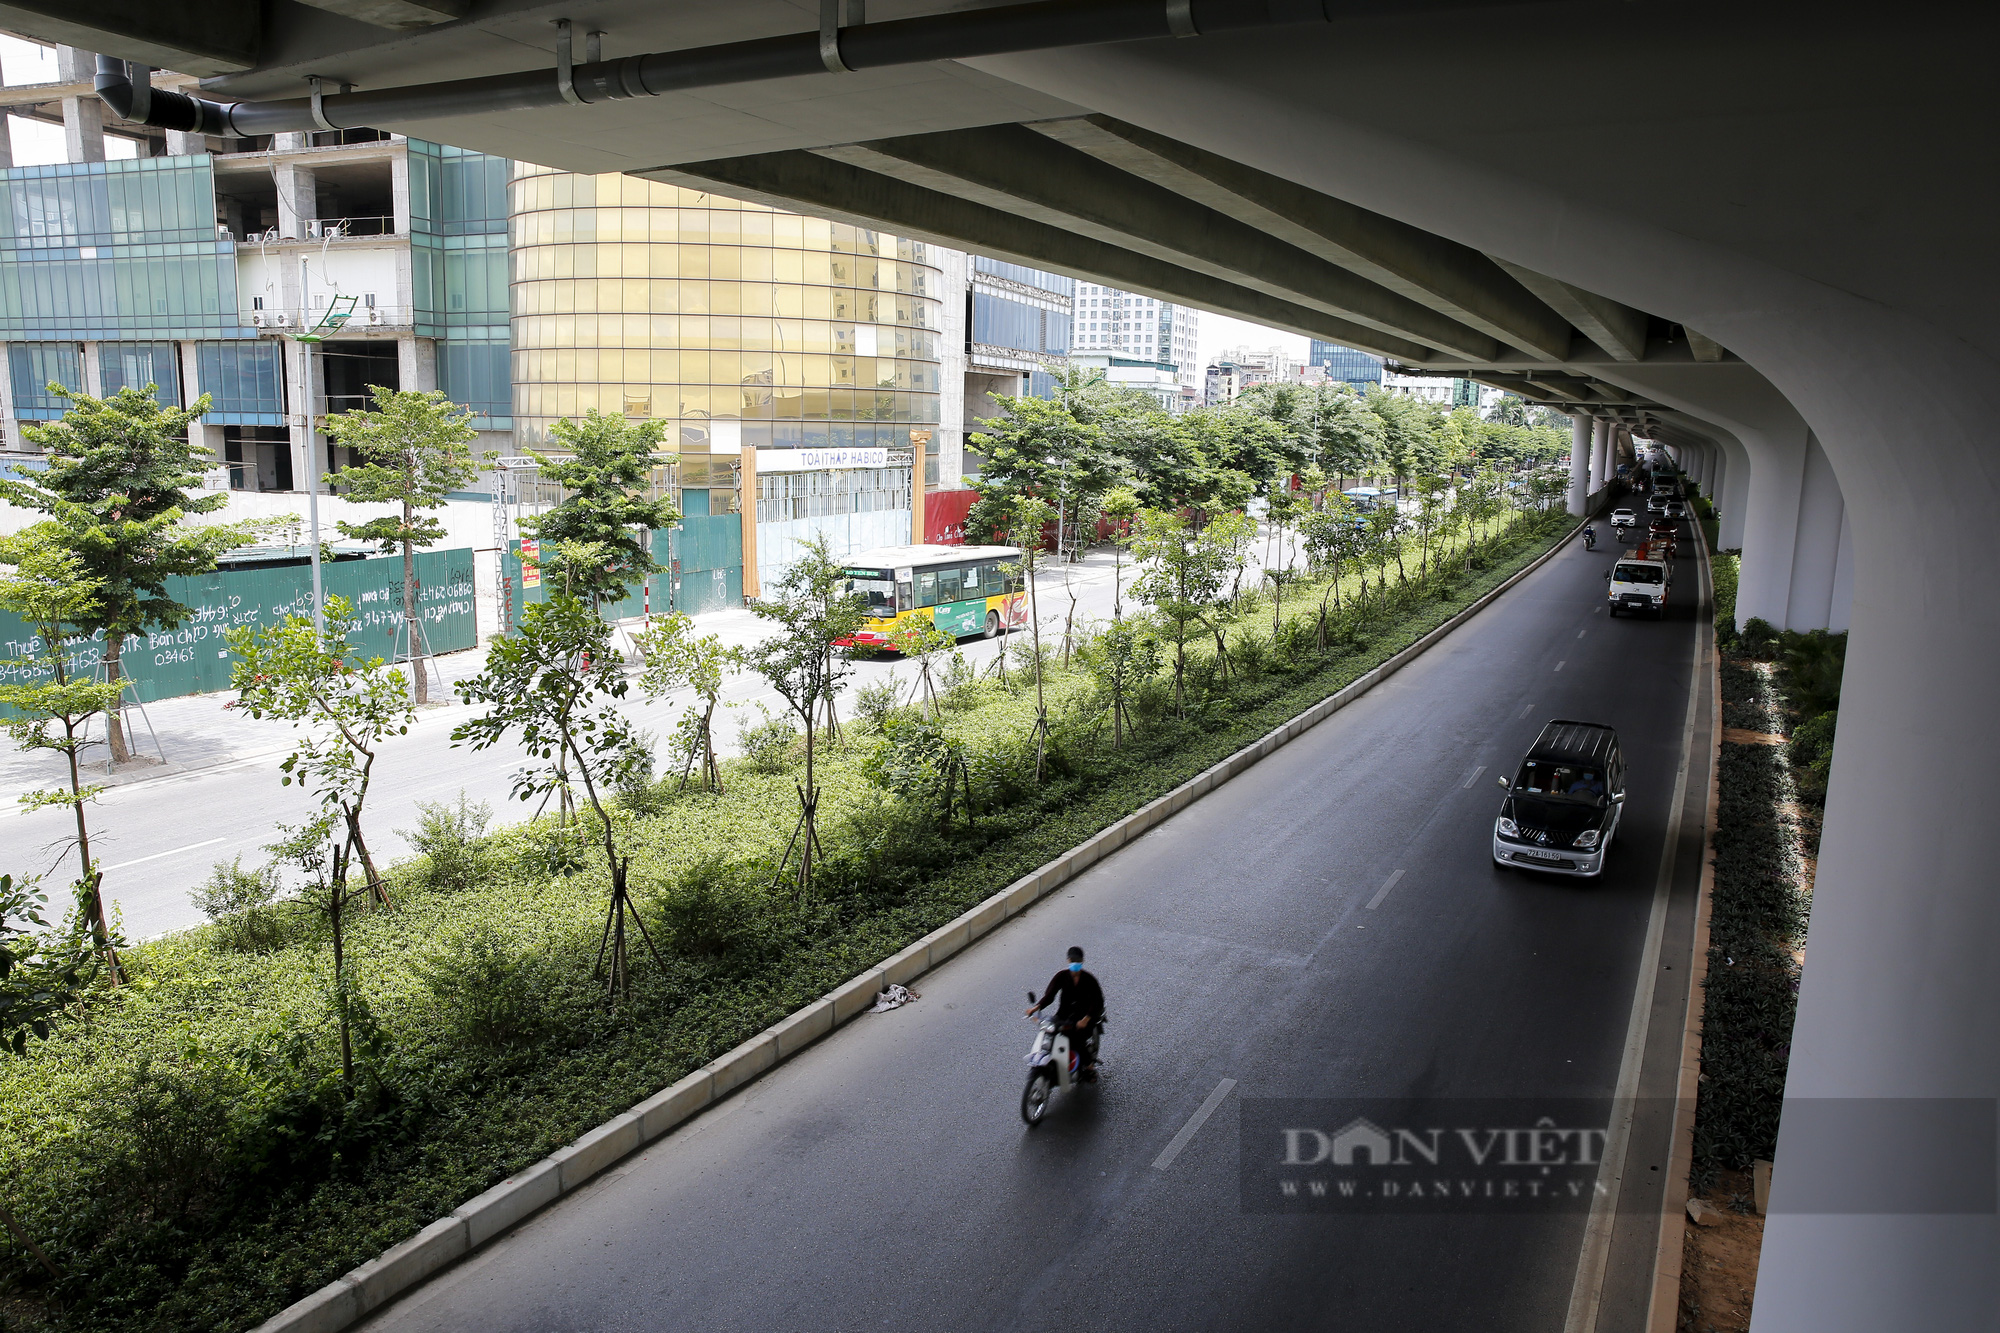 Hà Nội: Con đường trở thành “ốc đảo” mát rượi bởi đường trên cao và cây xanh - Ảnh 10.